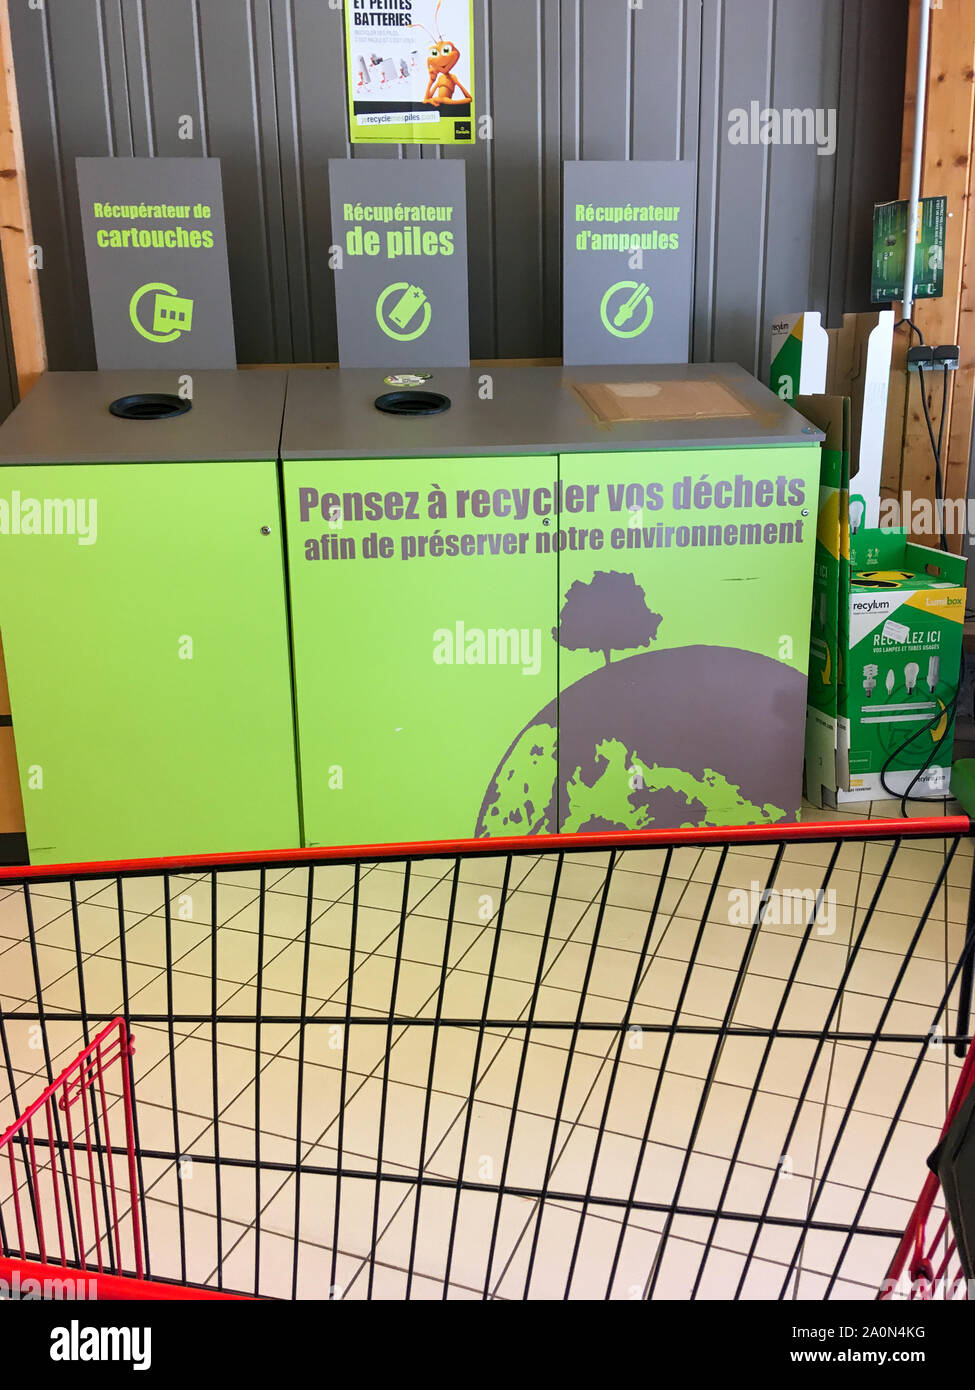 Punto de recogida de artículos reciclables, Supermercado, Lyon, Francia. Foto de stock